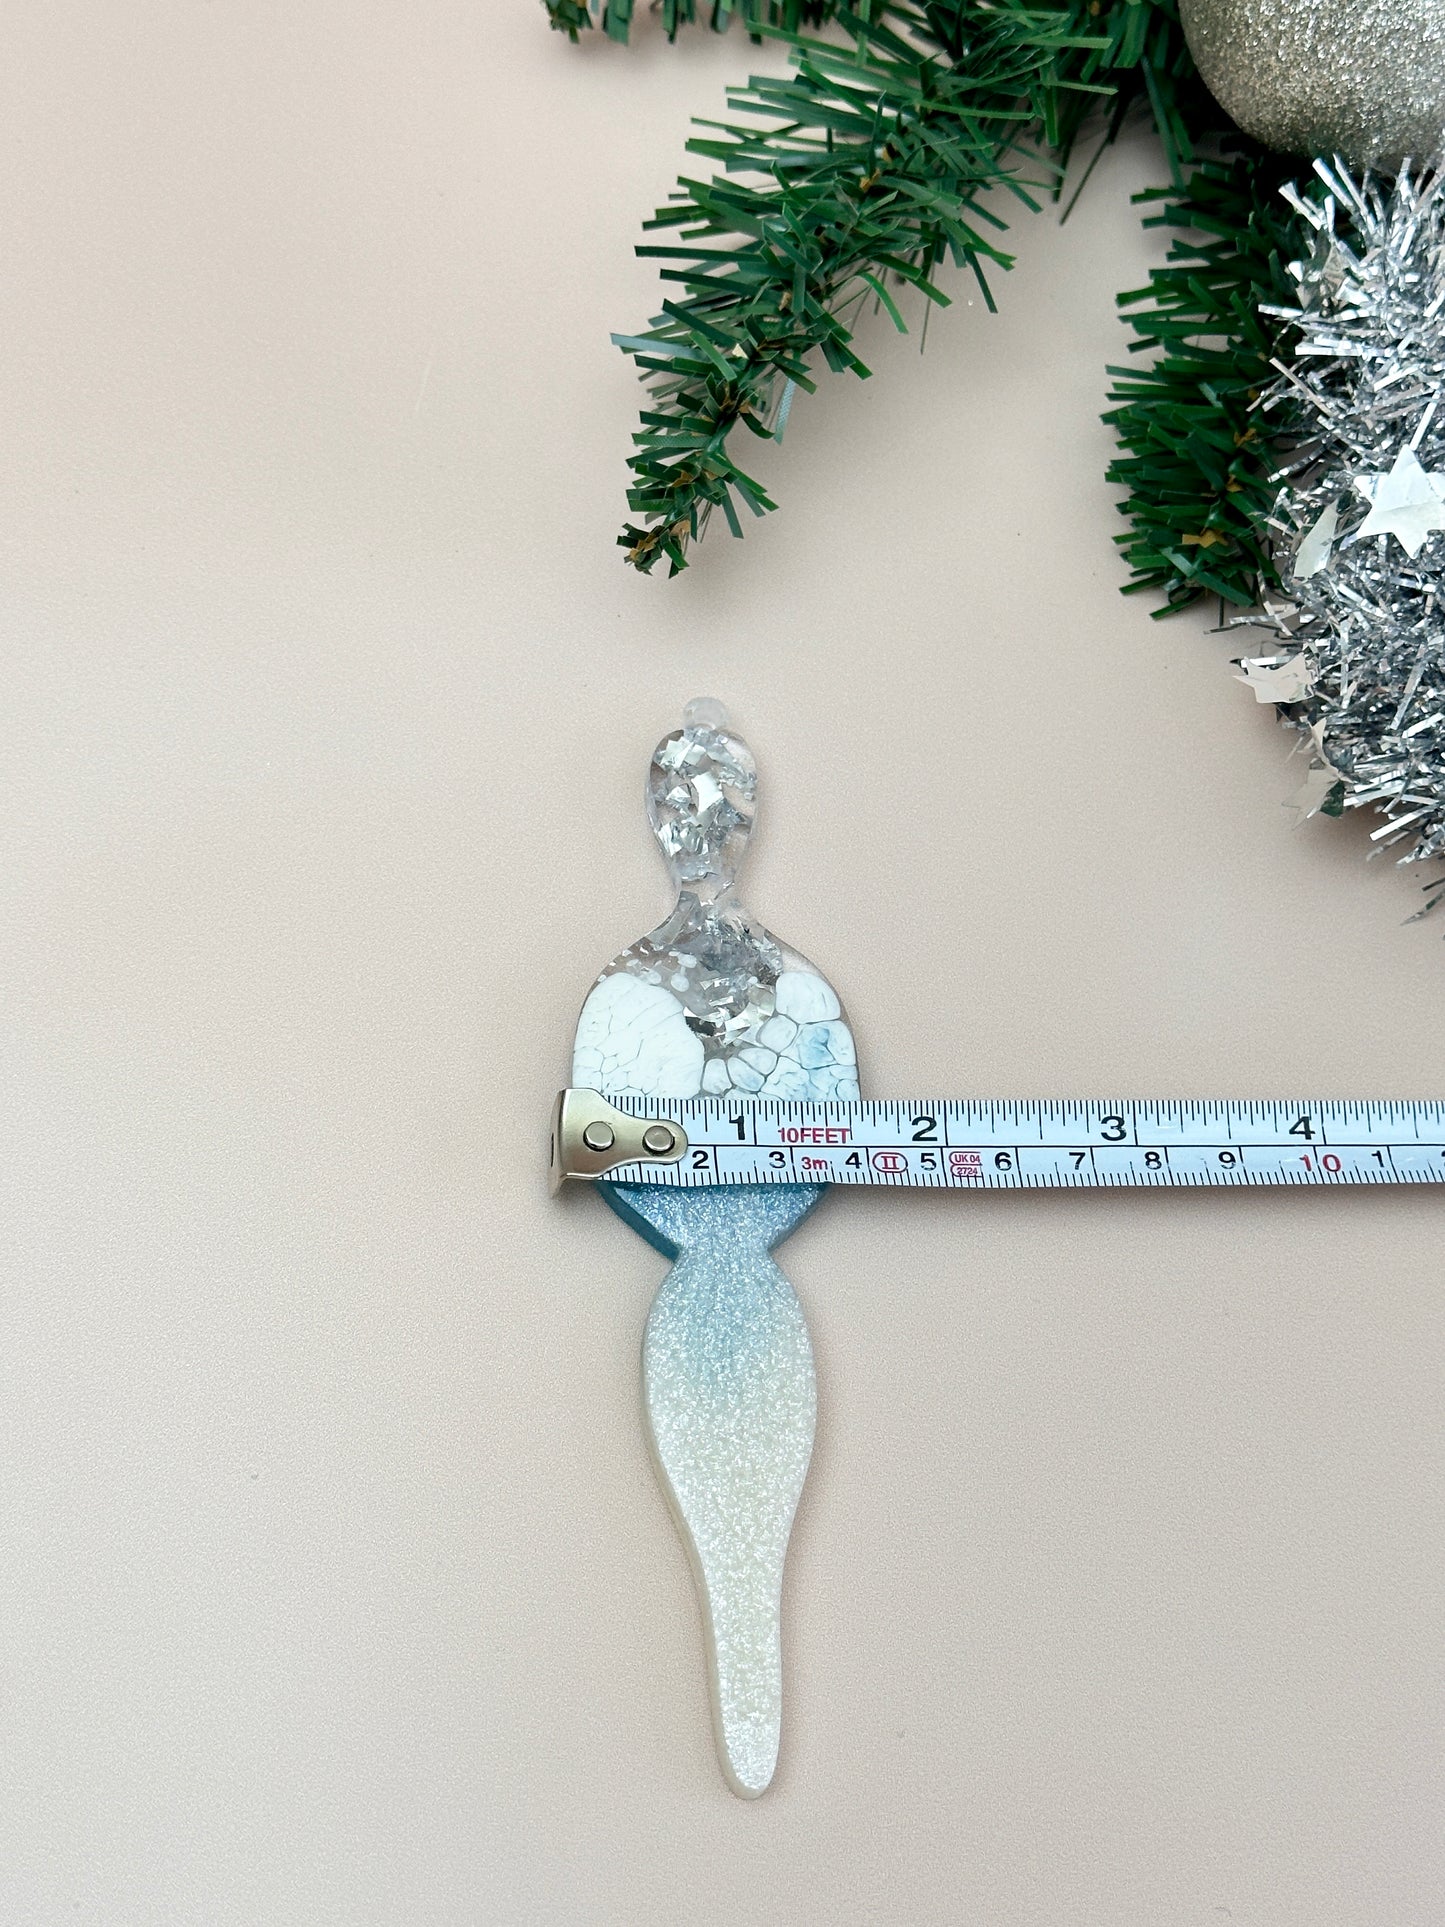 Weihnachtskerzen-Schneeflockenspielzeug: Große Silikonform für Kunstharzhandwerk, DIY-Dekoration und Geschenke